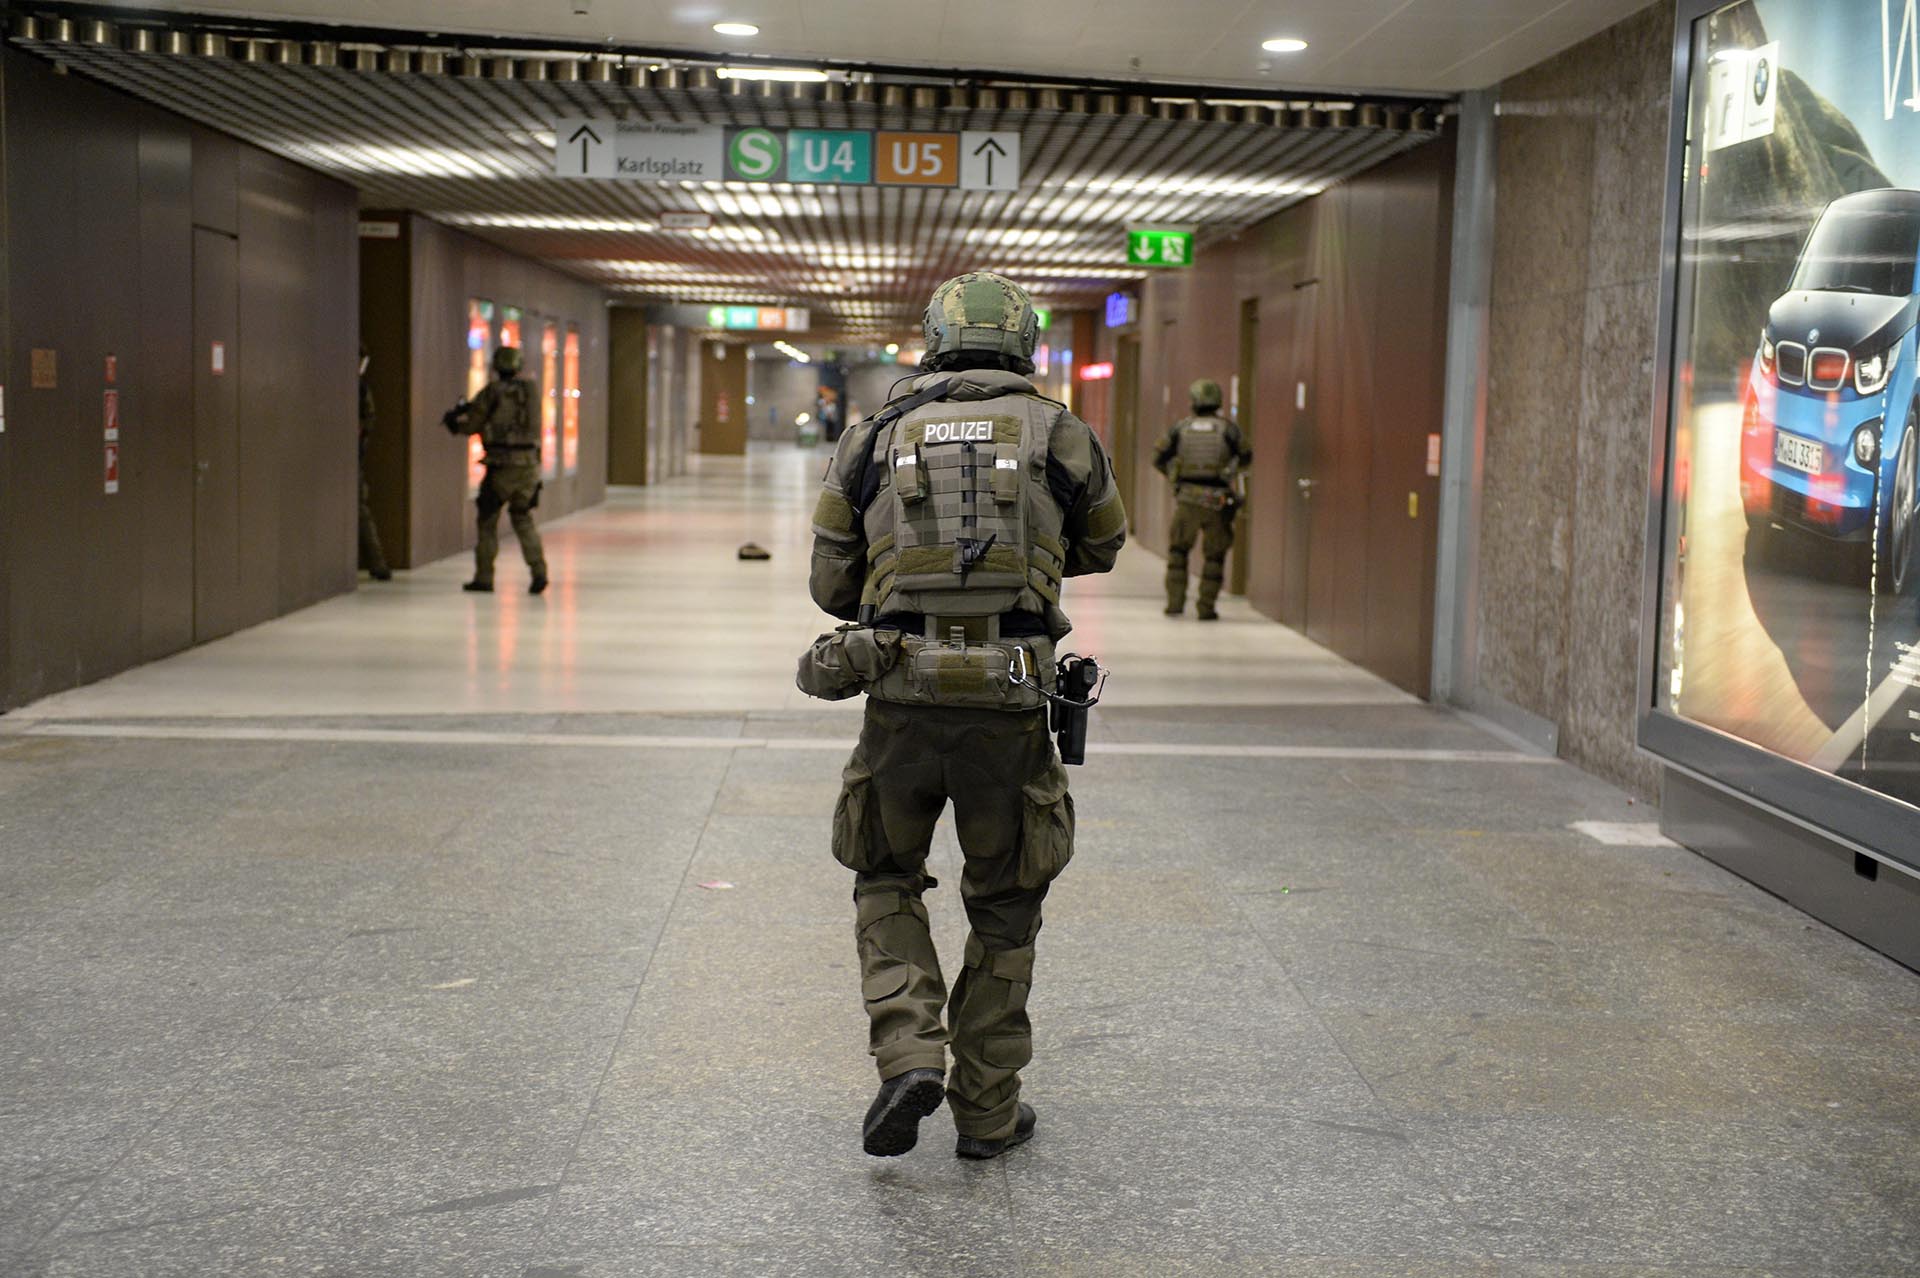 LUS08 MÚNICH (ALEMANIA) 22/07/2016.- Policías de las fuerzas especiales aseguran la estación de metro de Karlsplatz (Stachus) tras el tiroteo registrado en un centro comercial en Múnich, Alemania hoy, 22 de julio de 2016. Varias personas han muerto y otras han resultado heridas hoy en un tiroteo registrado en un centro comercial de Múnich (sur de Alemania), según informa el diario "Süddeustche Zeitung" citando fuentes policiales, que hablan de un solo atacante. EFE/ANDREAS GEBERT